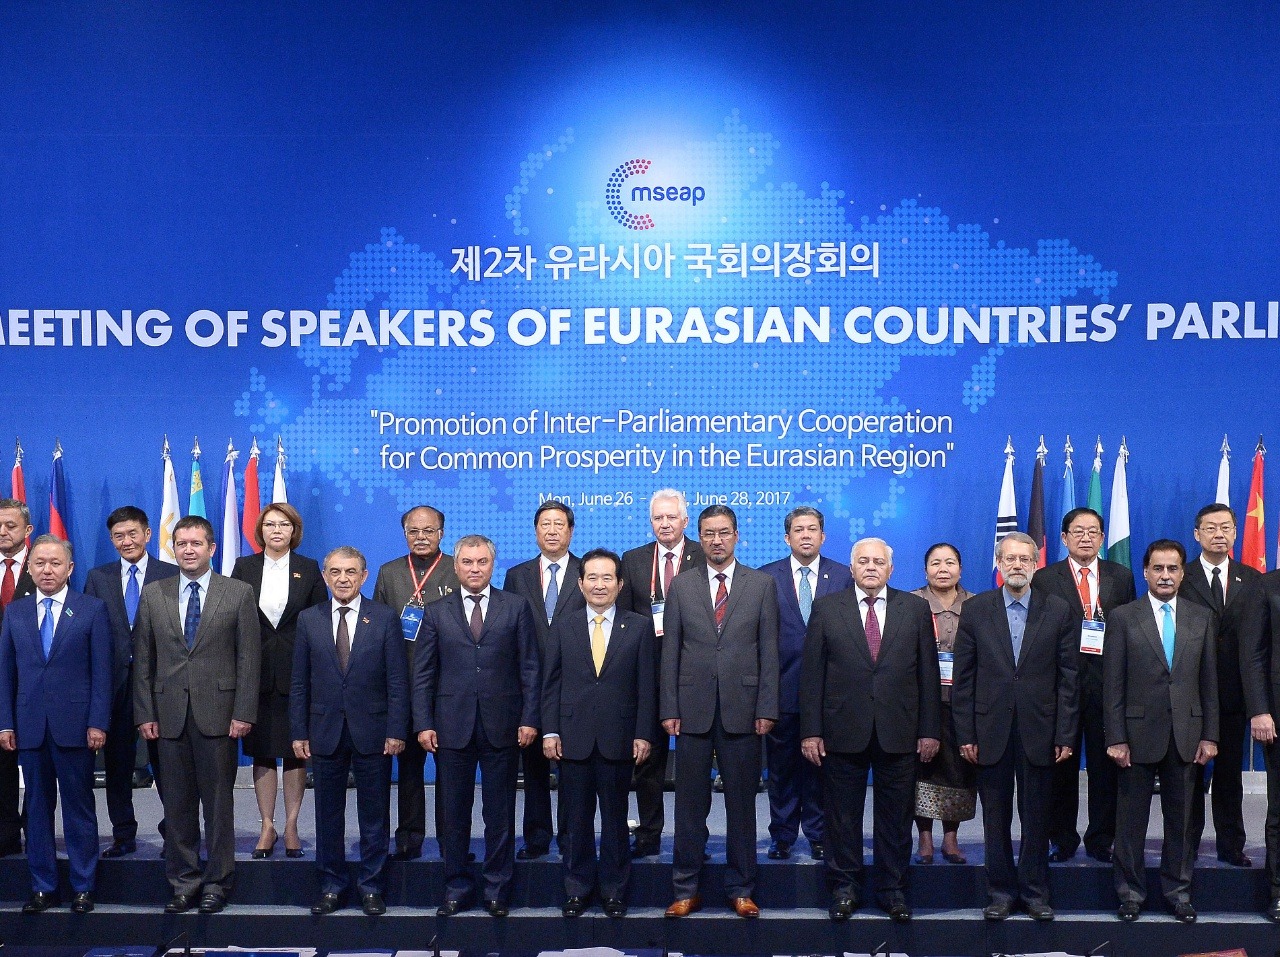 Predsedovia parlamentov euroázijských krajín, v prednom rade tretí sprava predseda NR SR Andrej Danko